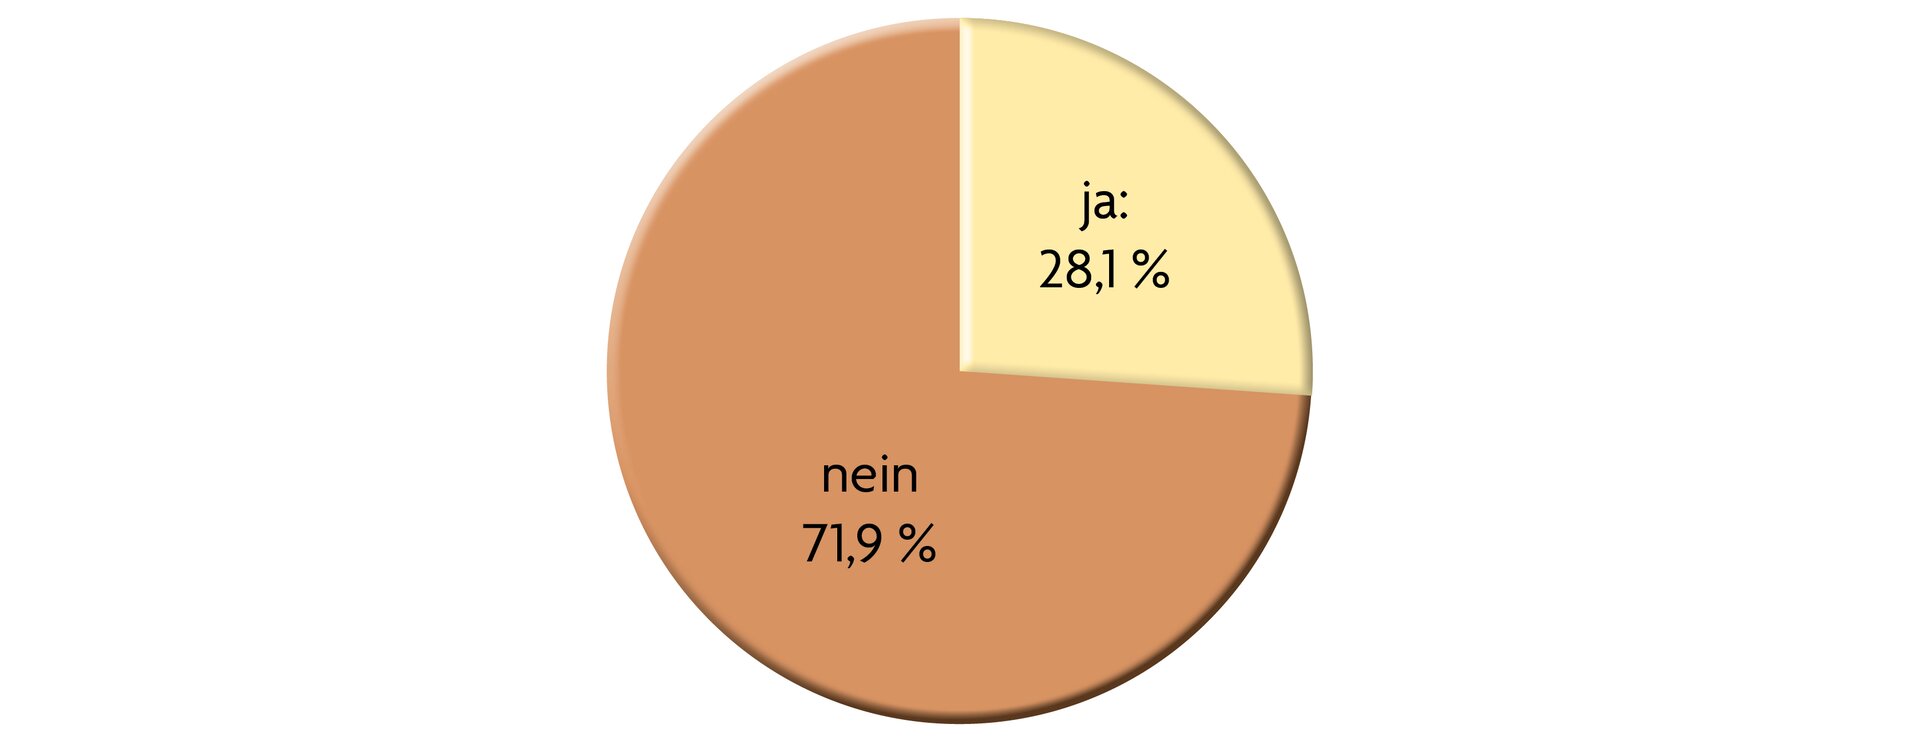 Ilustracja przedstawia wykres kołowy. Znajdują się na nim dwie odpowiedzi: nein 71,9%, ja 28,1%.